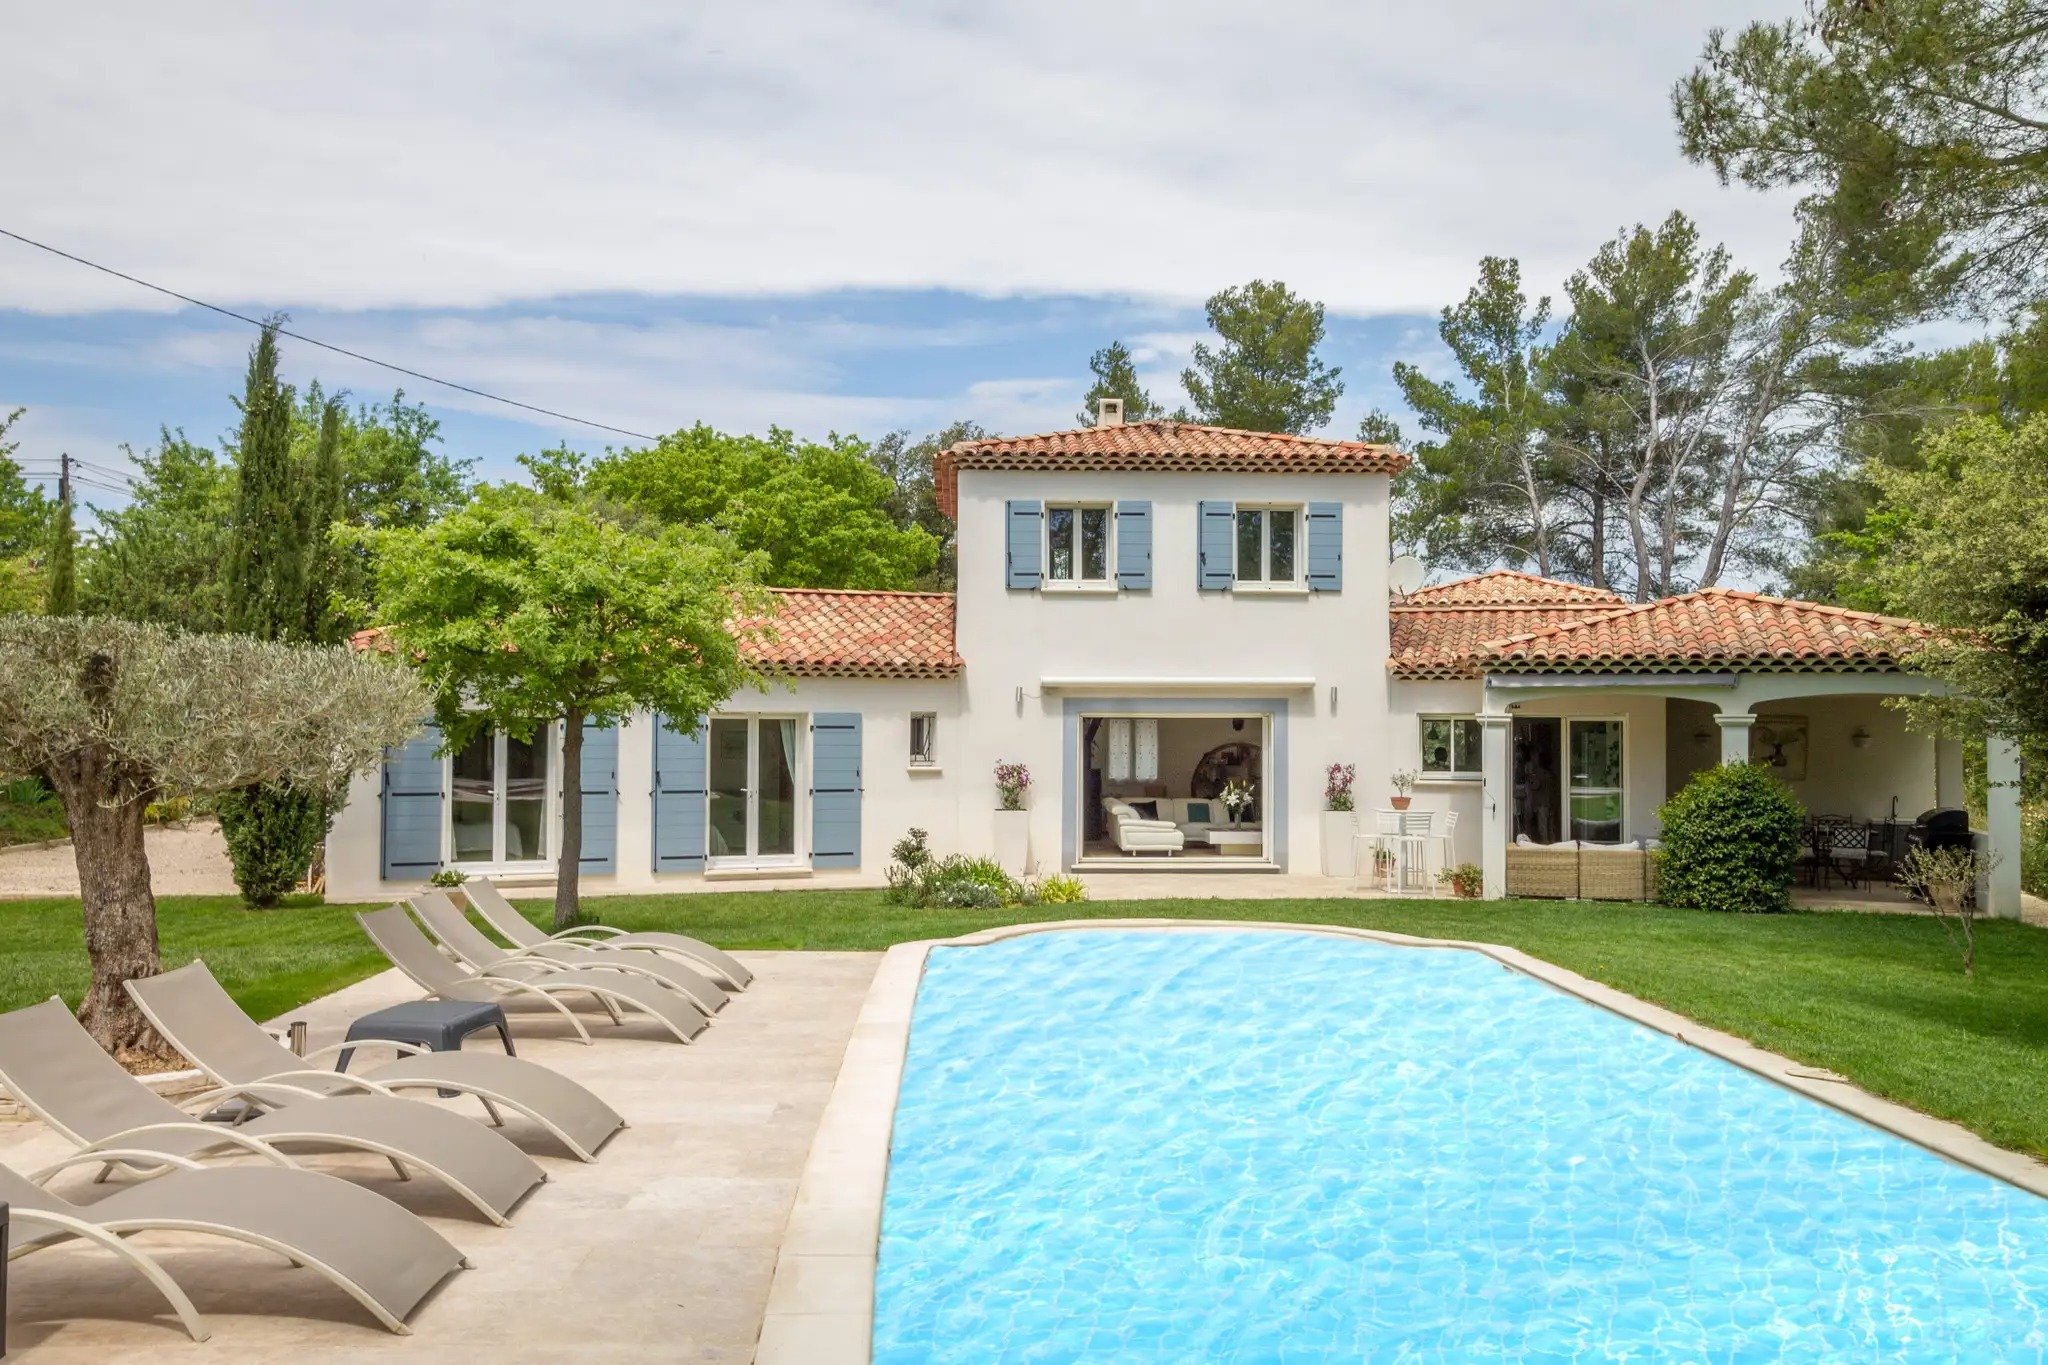 Vakantiehuis Zuid Frankrijk met zwembad.jpg